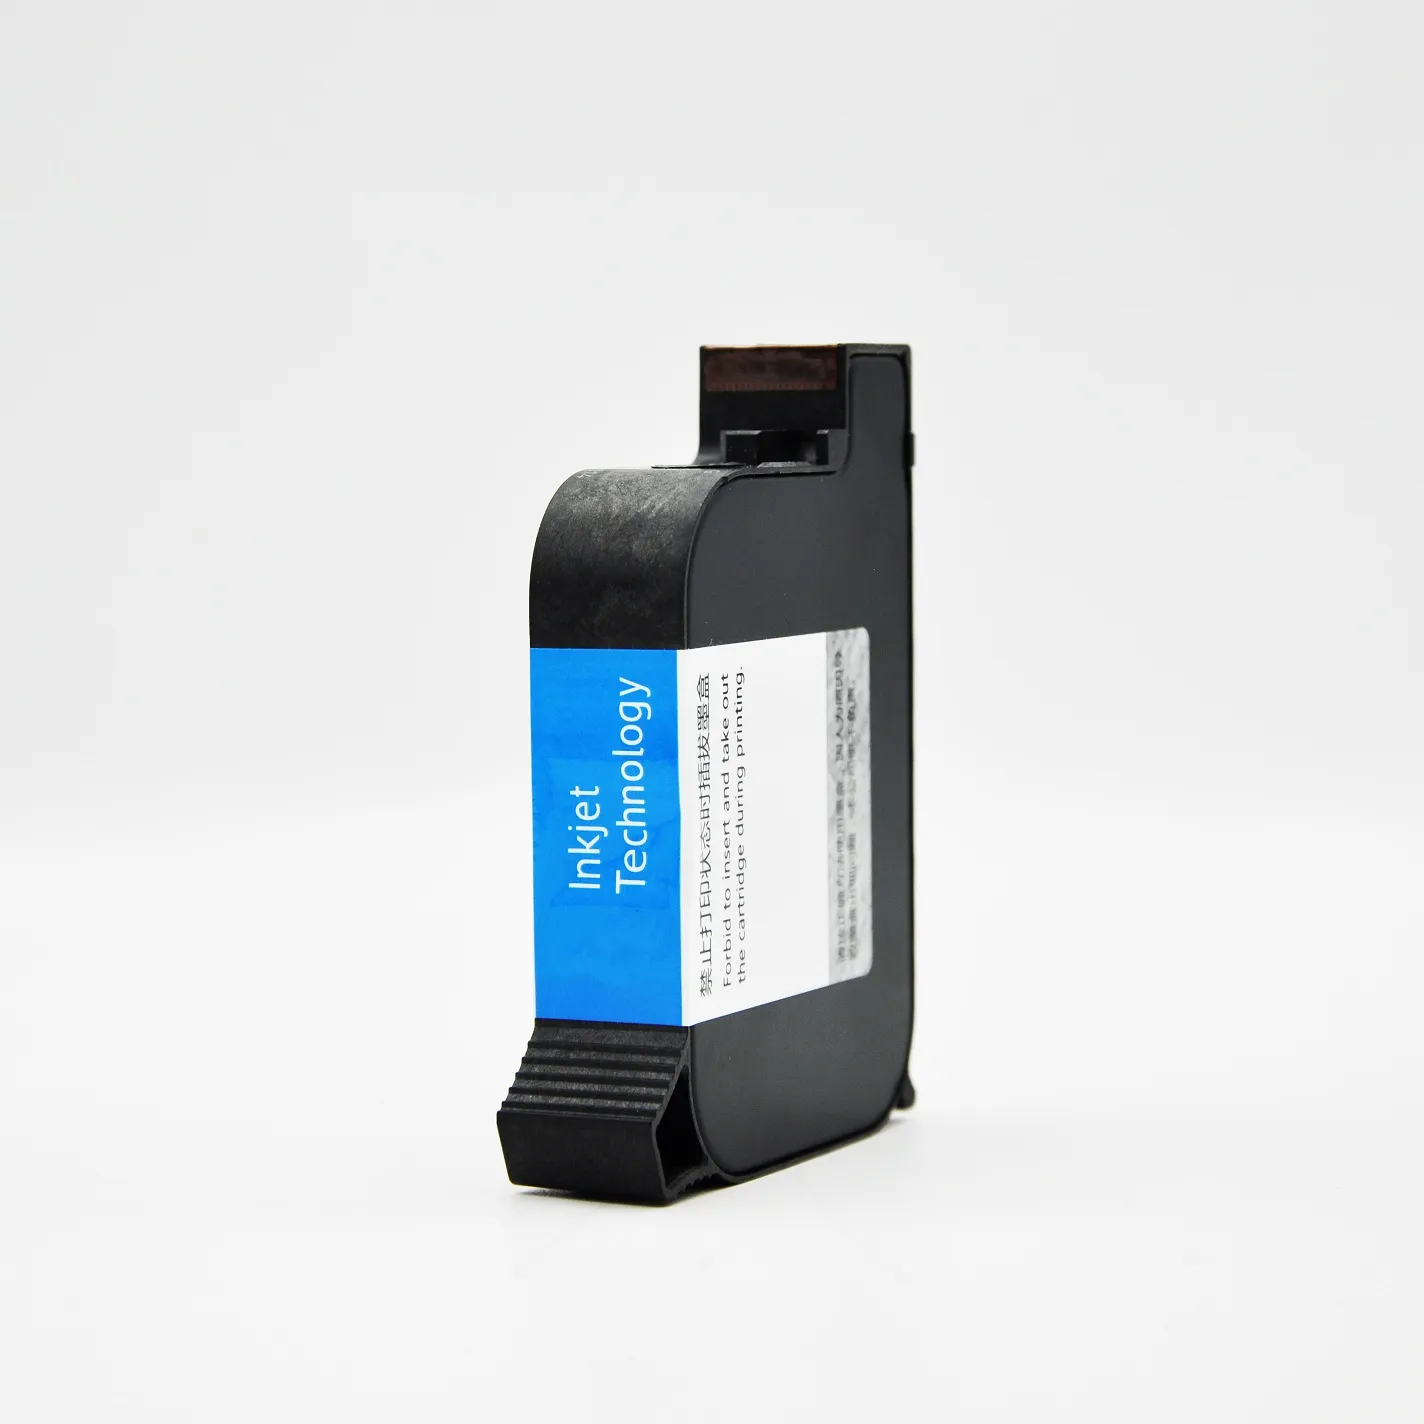 JS12-cartucho de tinta Original para impresora de inyección de tinta, a base de aceite, 42 ml, cartuchos de tinta multicolor